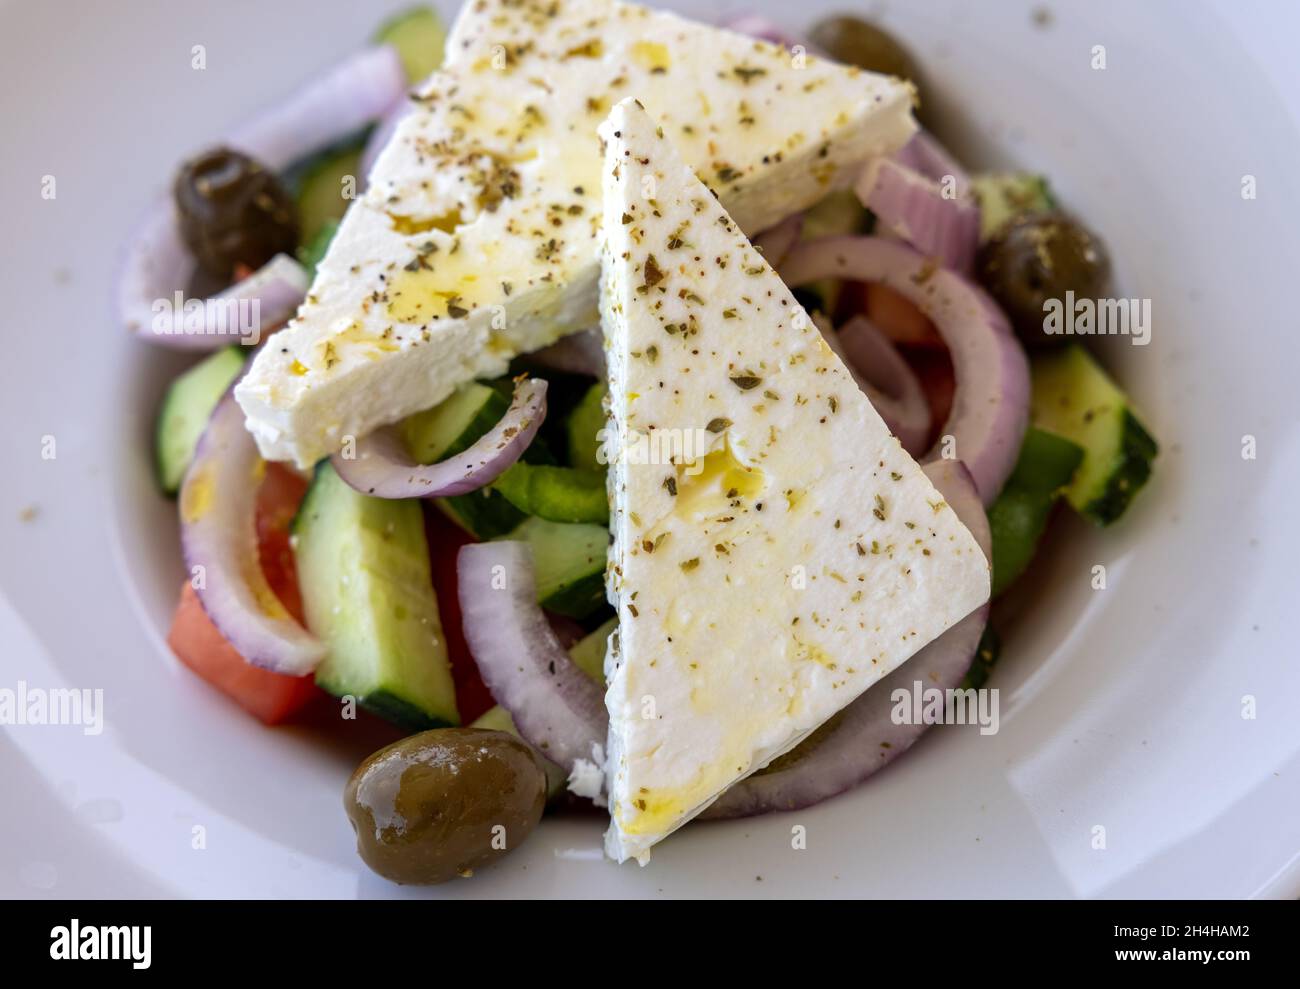 Griechischer Salat mit Feta-Käse. Typisch leckeres griechisches Mittagessen Stockfoto